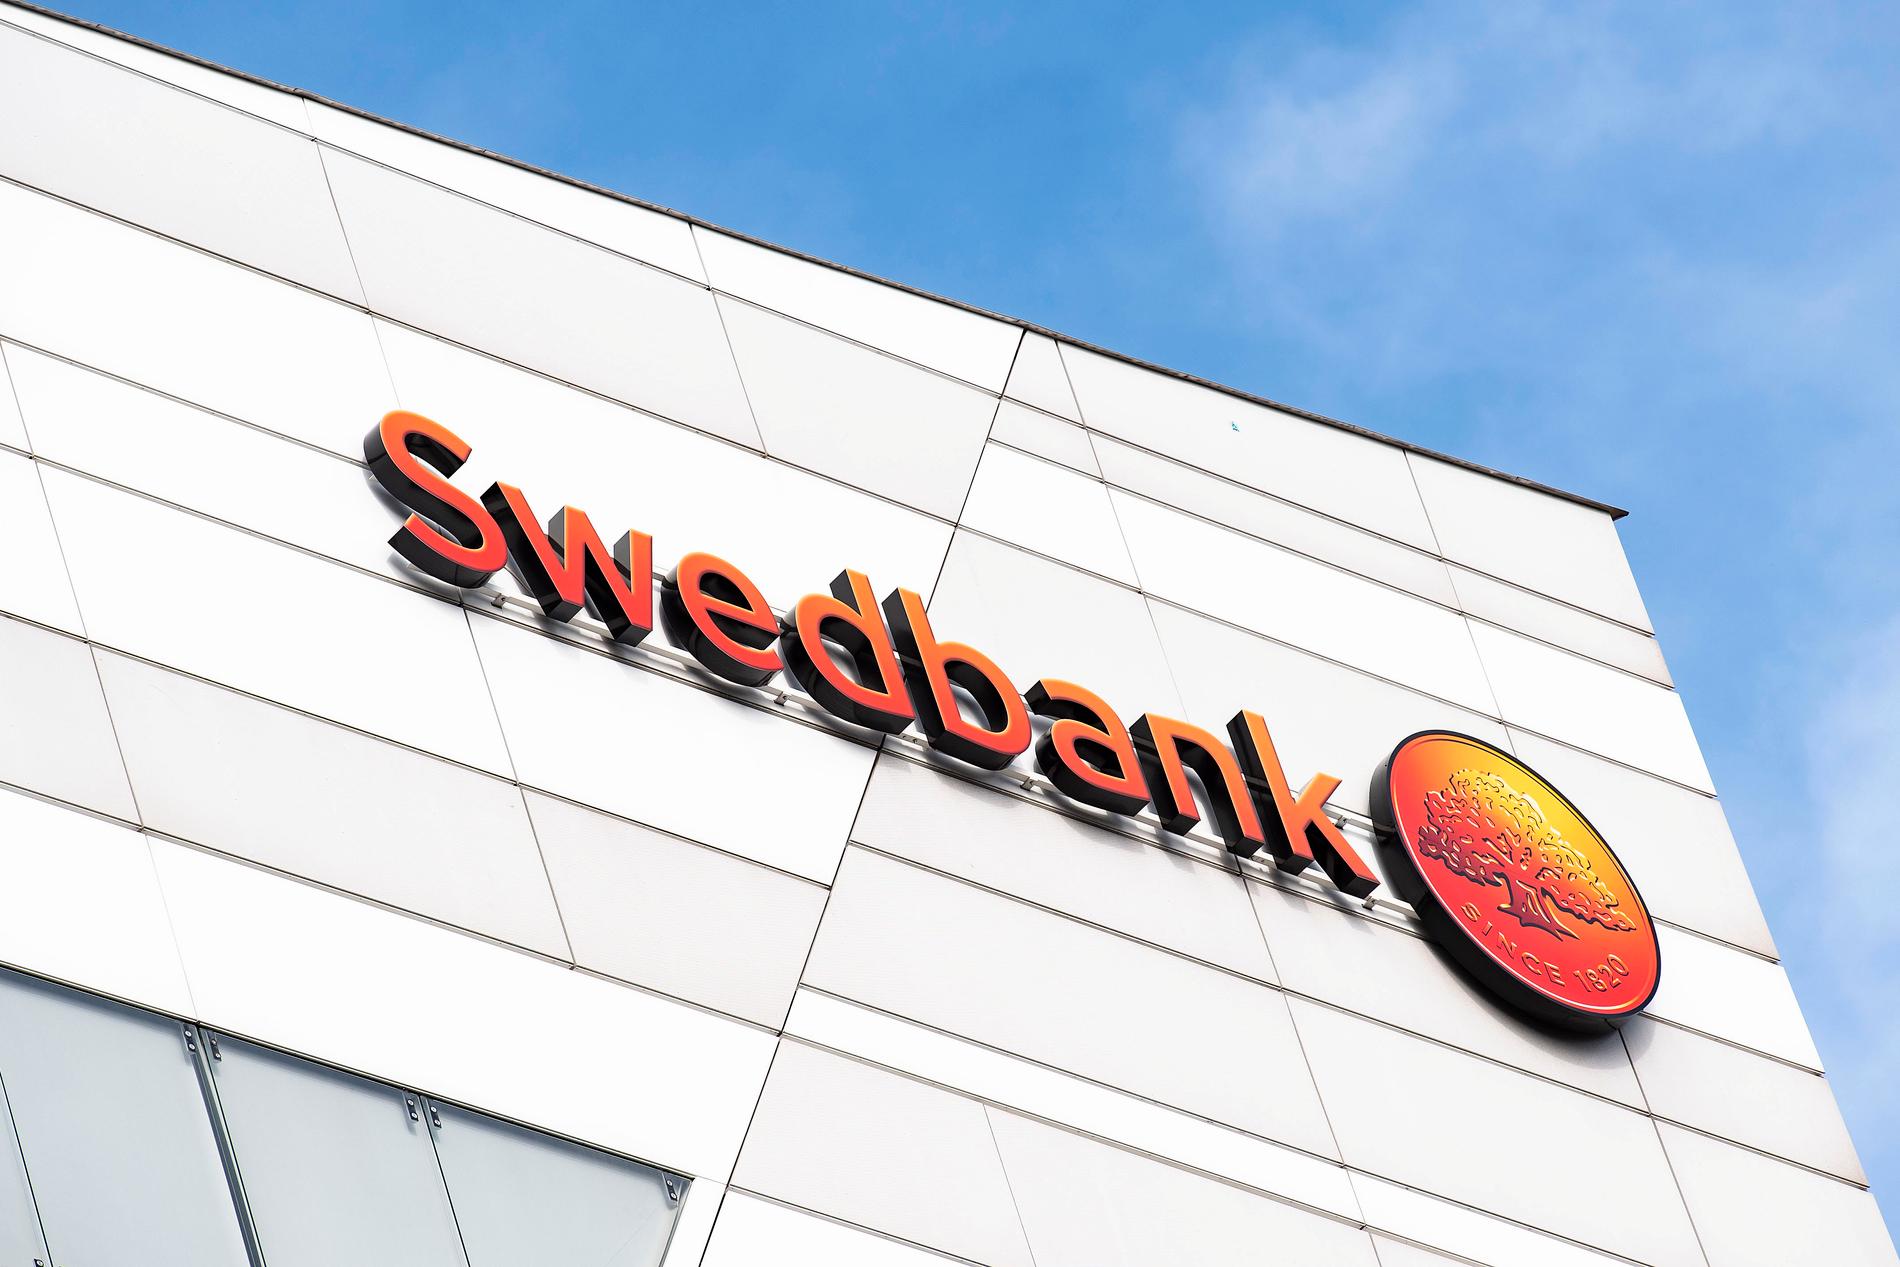 Swedbank har fryst kontot. ”Vi följer våra normala arbetssätt”, säger storbankens pressansvarige.